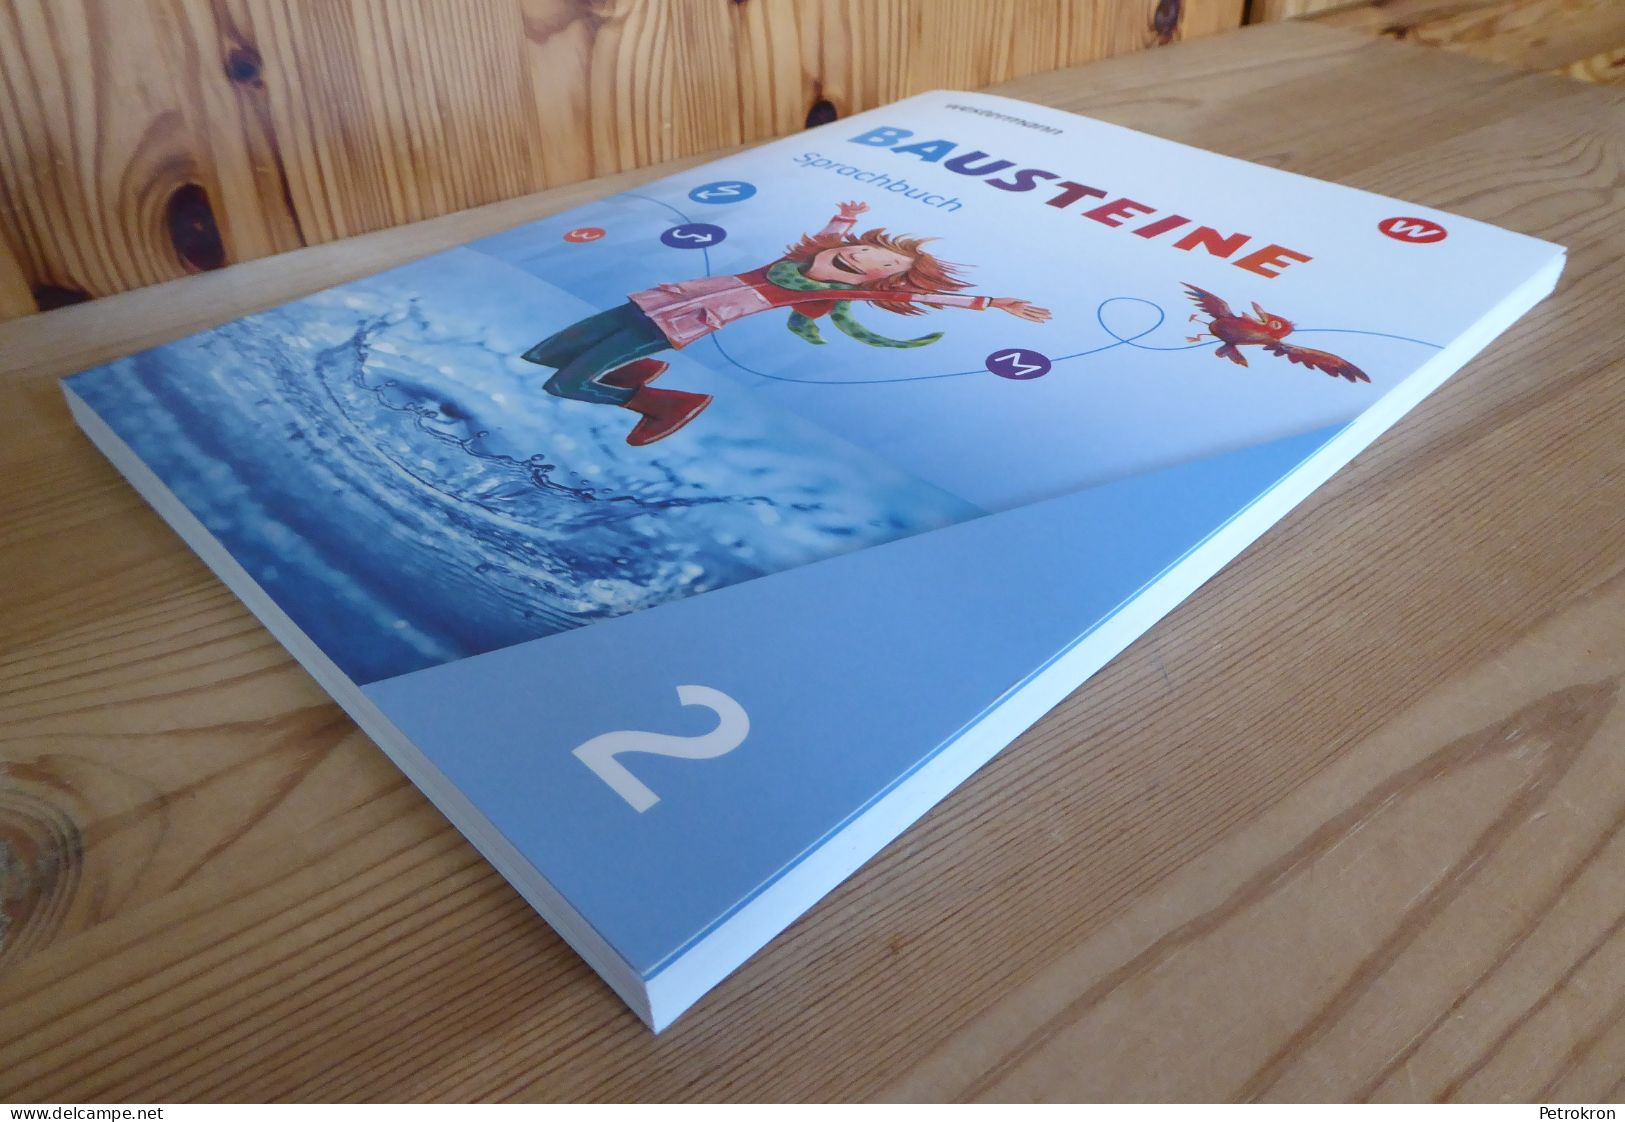 Westermann Bausteine Sprachbuch Klasse 2 Grundschule Deutsch 2020 Mit Beiheft - Livres Scolaires